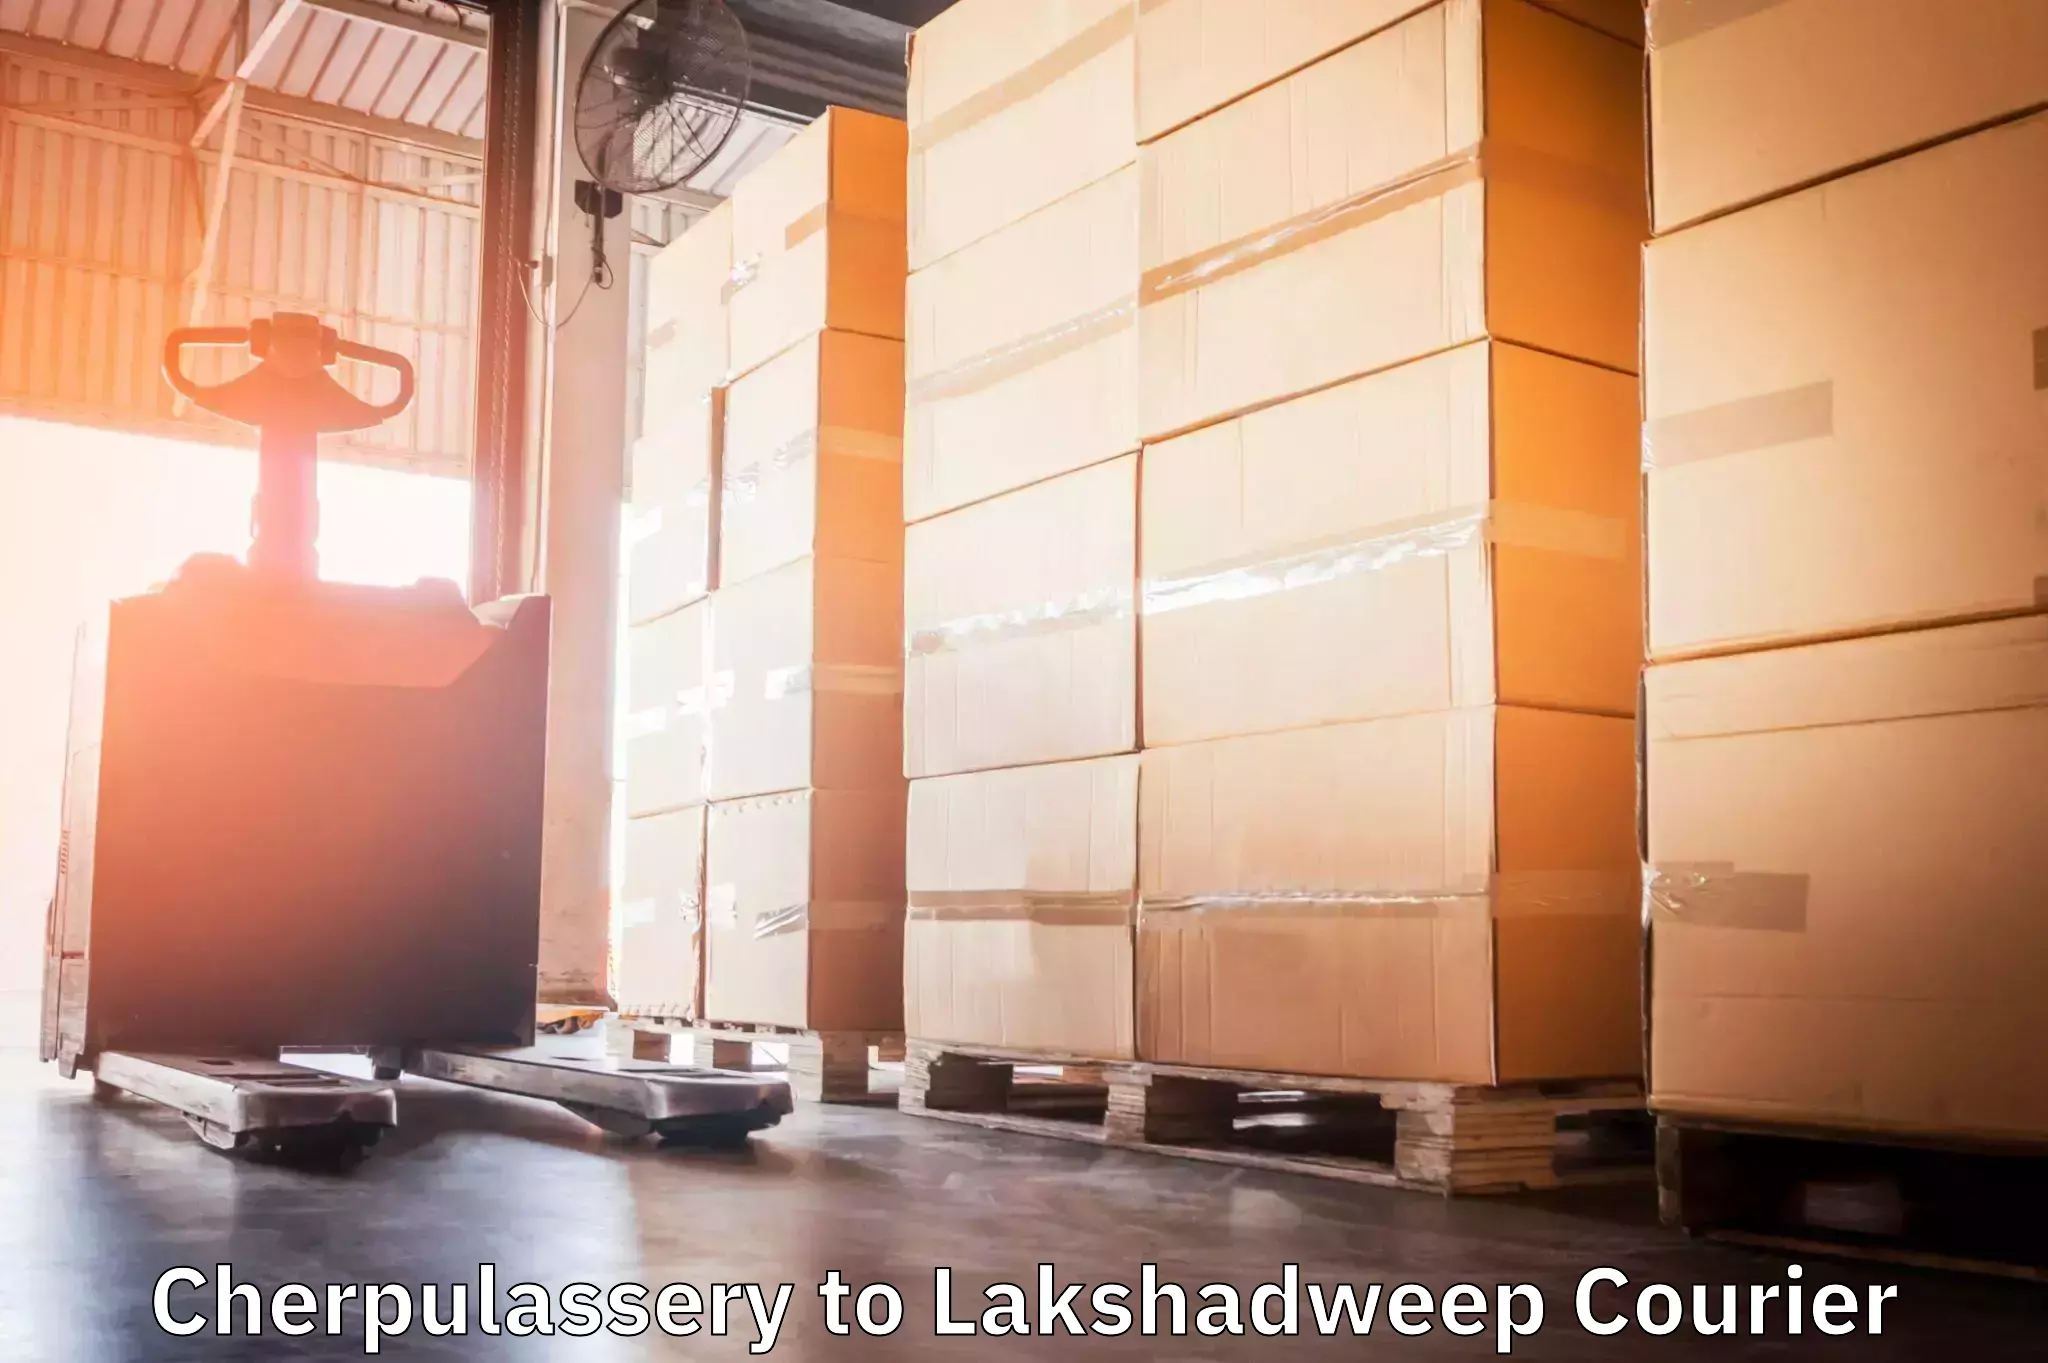 Modern delivery methods in Cherpulassery to Lakshadweep